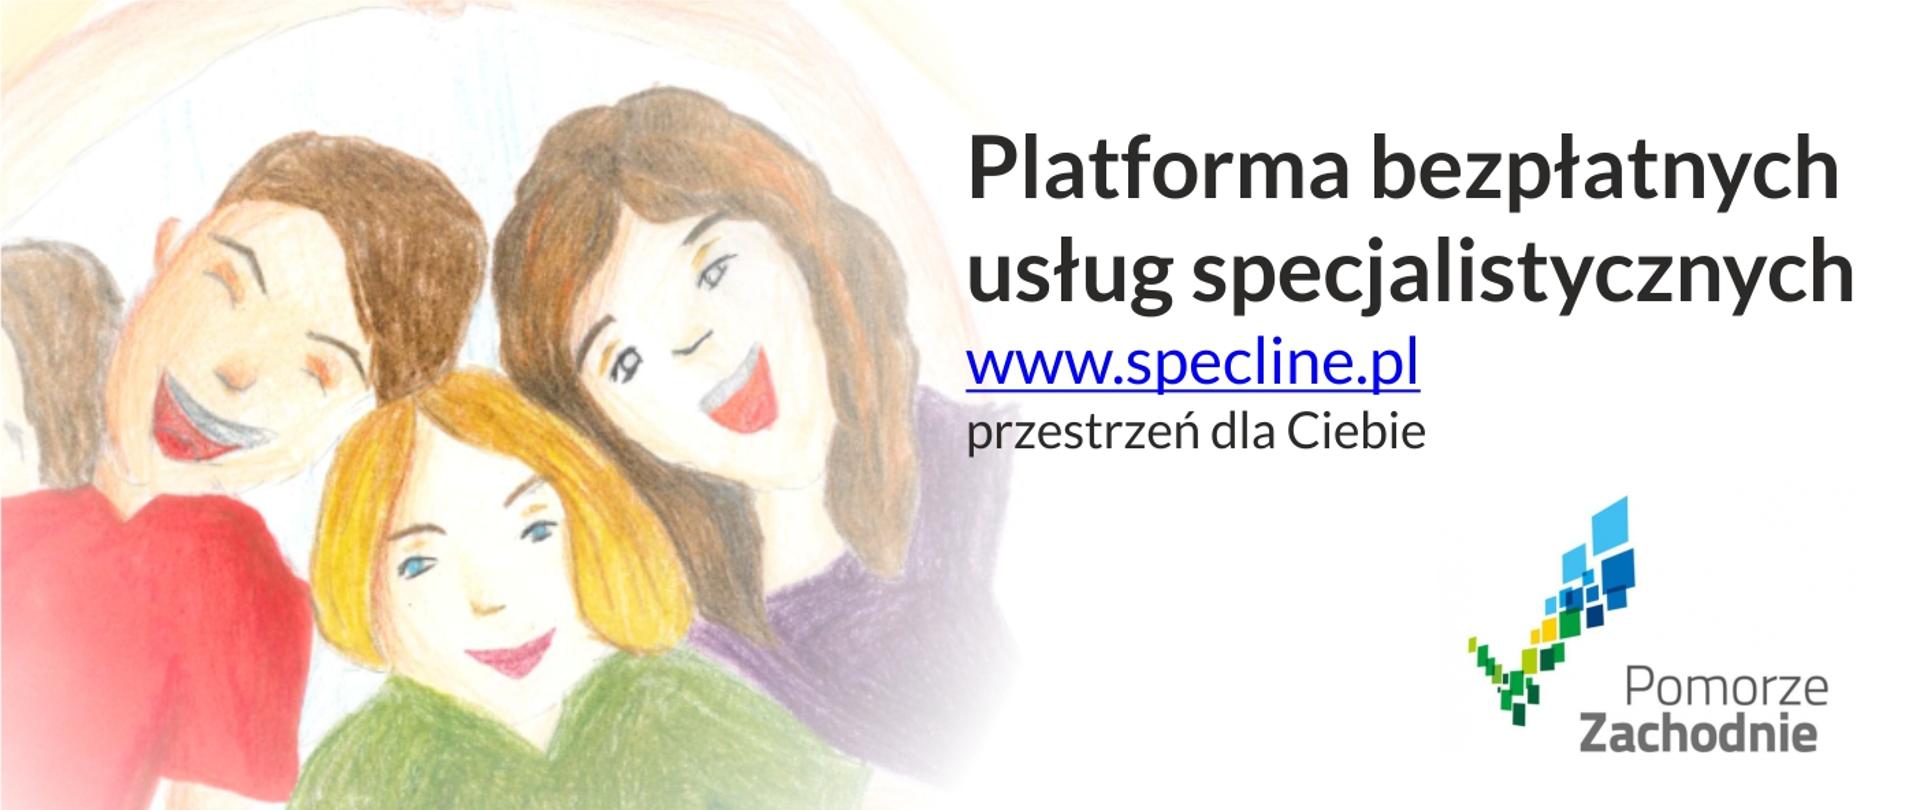 Grafika przedstawia dziecięcy rysunek rodziny oraz prezentuje napis: platforma bezpłatnych usług specjalistycznych www.spceline.pl przestrzeń dla Ciebie